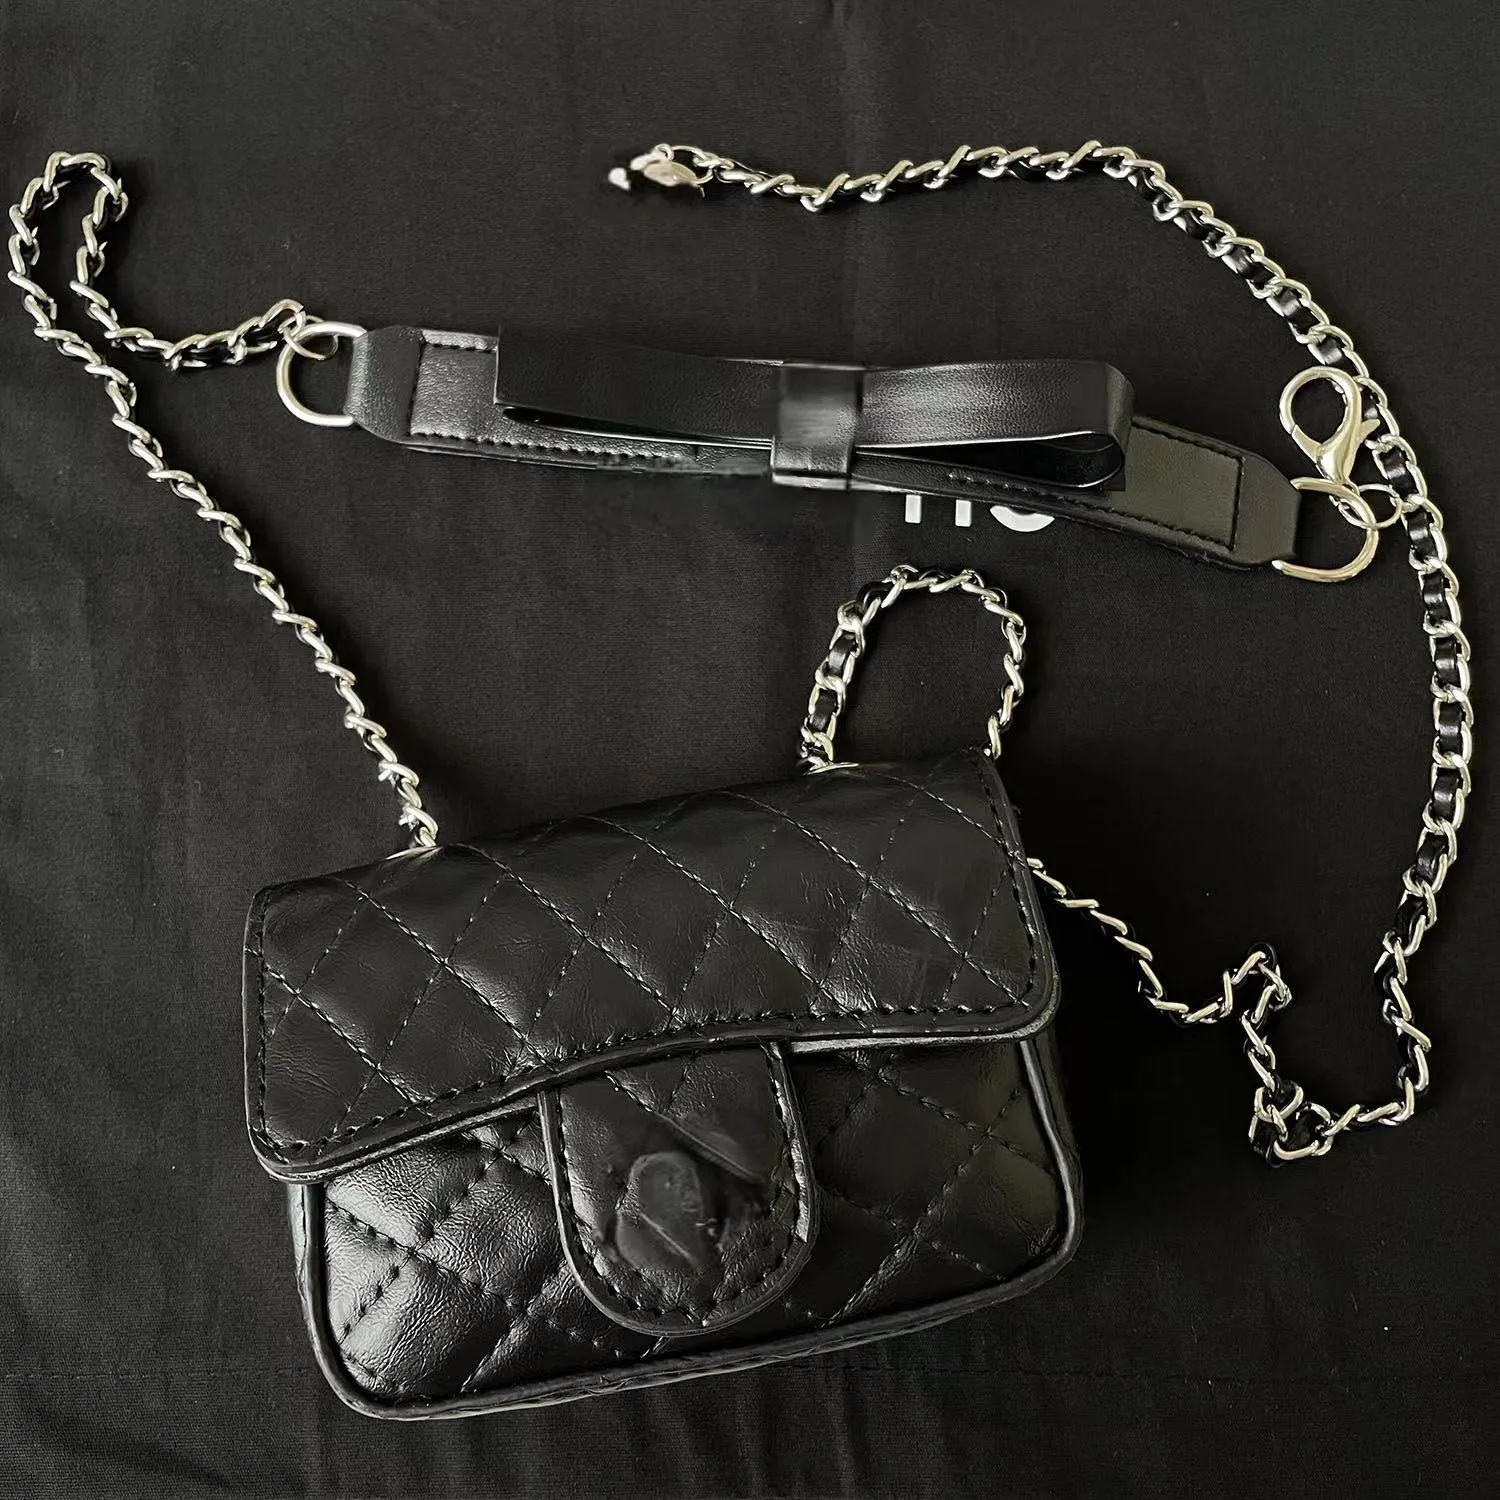 CC Дизайнерская сумка Crossbody Luxury Dimbag Классическая маленькая квадратная кошелька модные сумки кожаная сумочка.